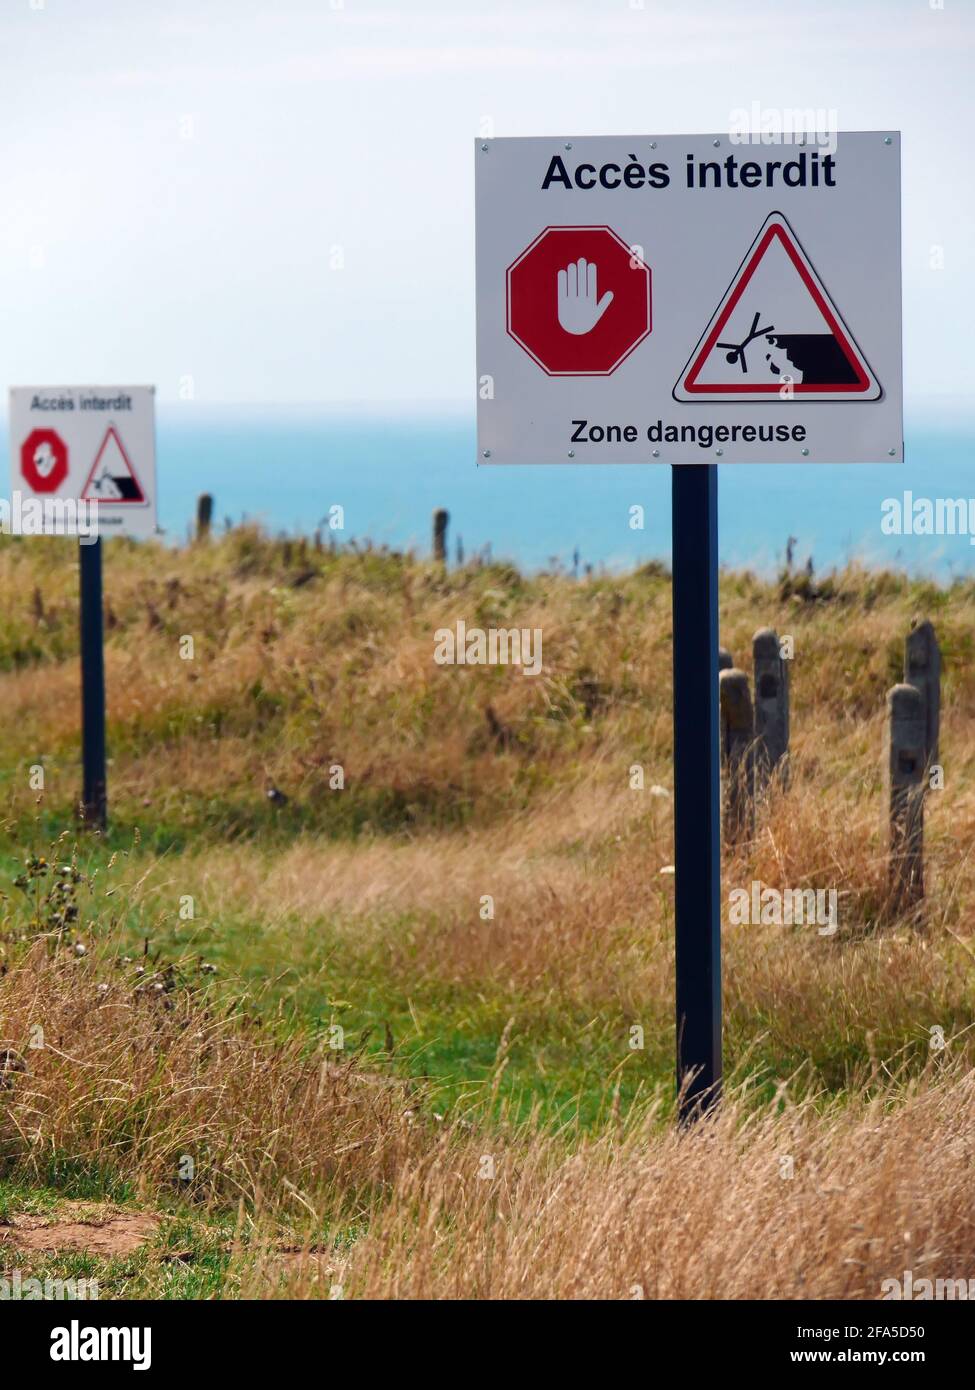 Interdiction signe en français: Accès refusé! Zone dangereuse. Glissement de terrain Banque D'Images